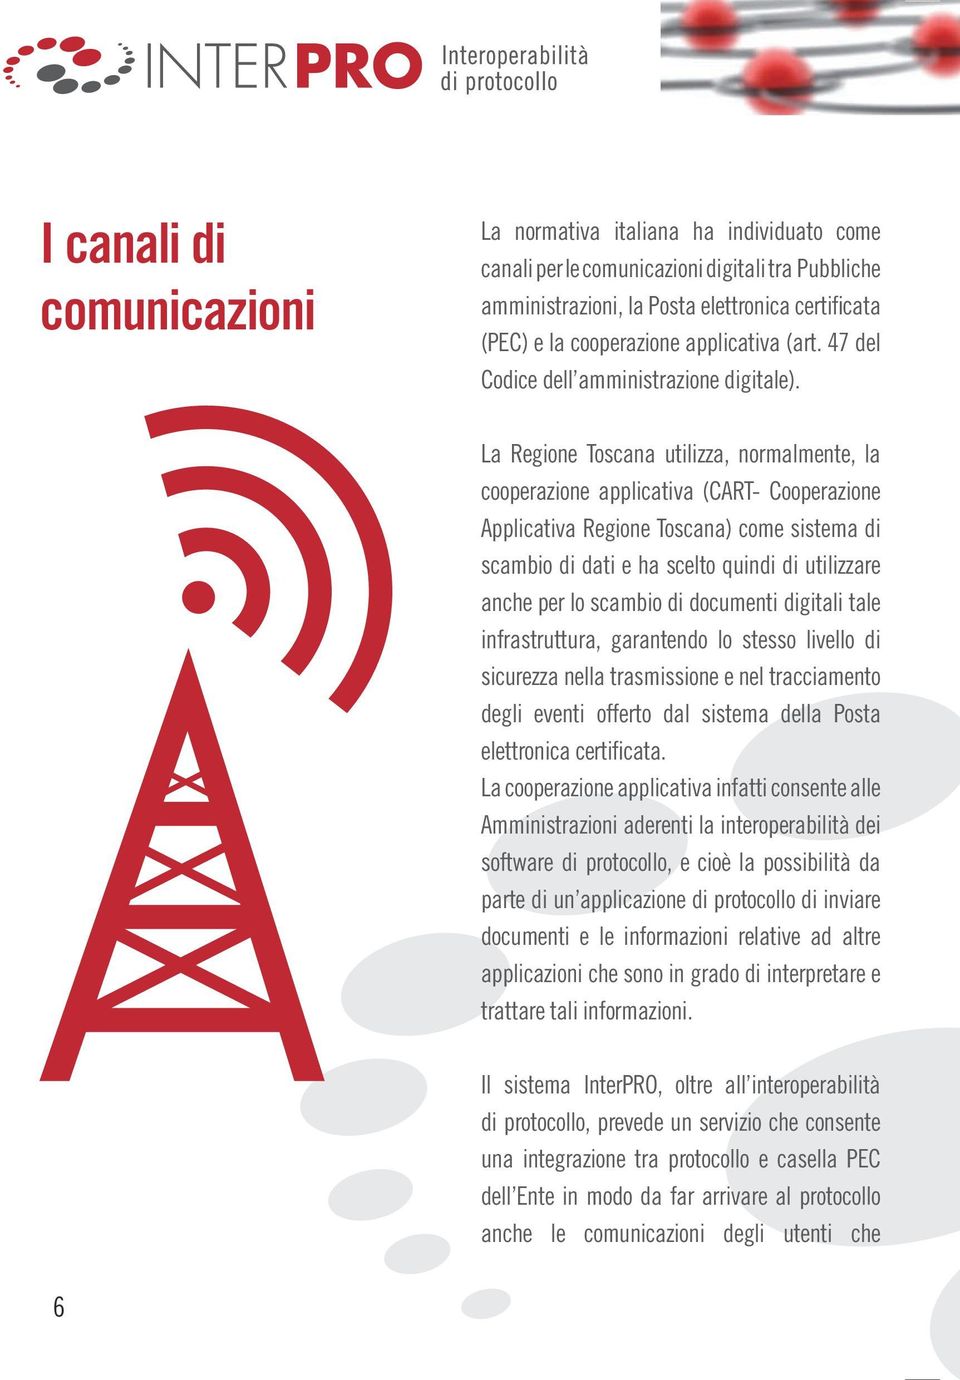 La Regione Toscana utilizza, normalmente, la cooperazione applicativa (CART- Cooperazione Applicativa Regione Toscana) come sistema di scambio di dati e ha scelto quindi di utilizzare anche per lo